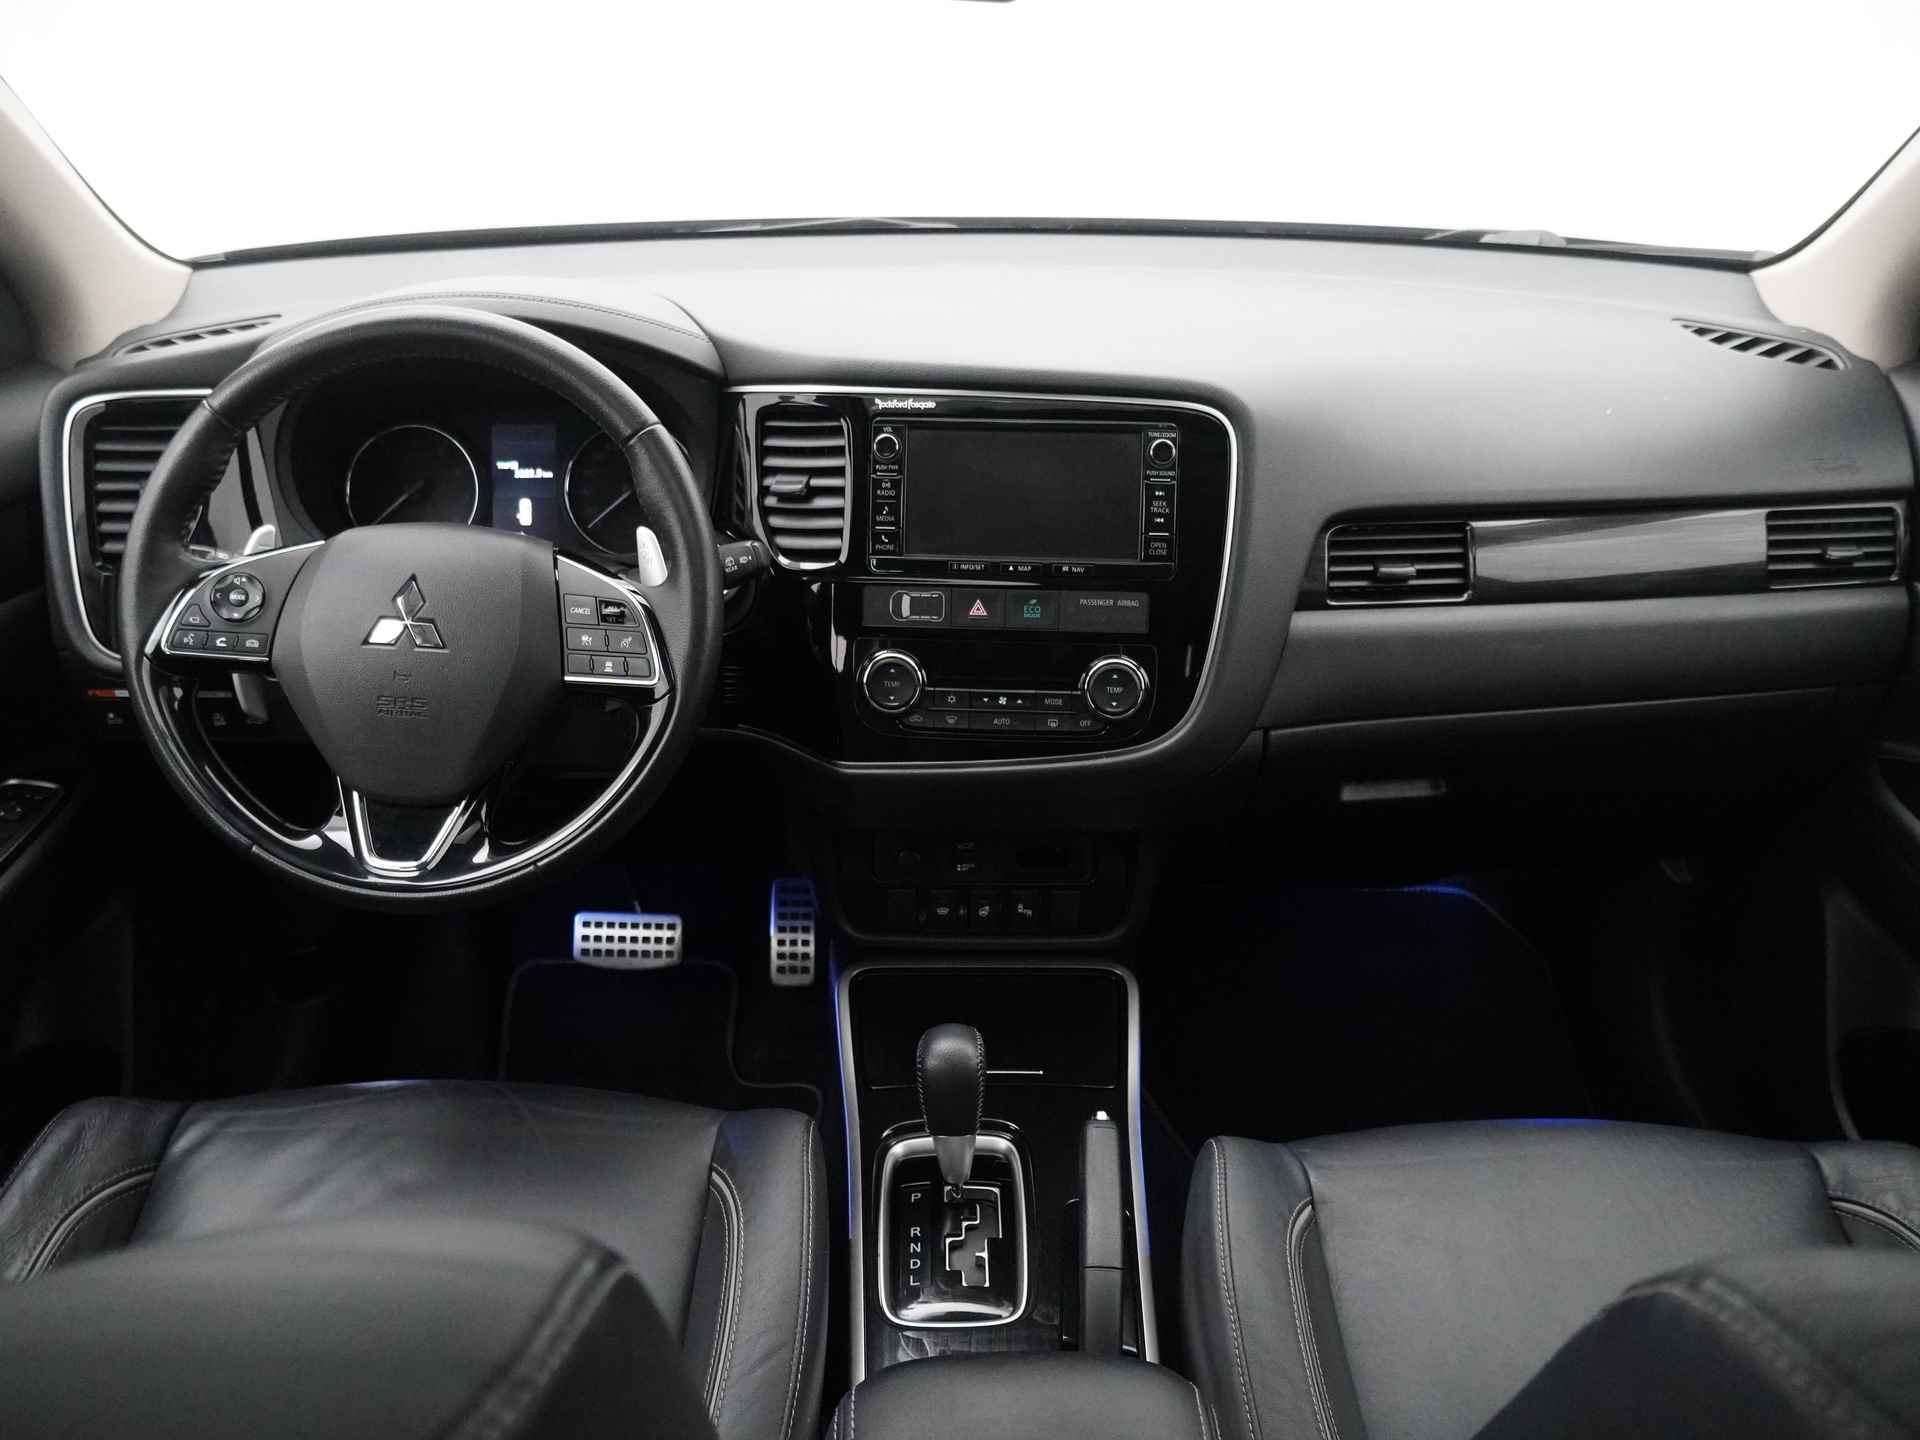 Mitsubishi Outlander 2.0 Instyle+ 4WD - Schuifkanteldak - Lederen bekleding - Voorraam verwarming - Apple CarPlay / Android Auto - Elektrische achterklep - 12 Maanden bovag garantie - 38/48